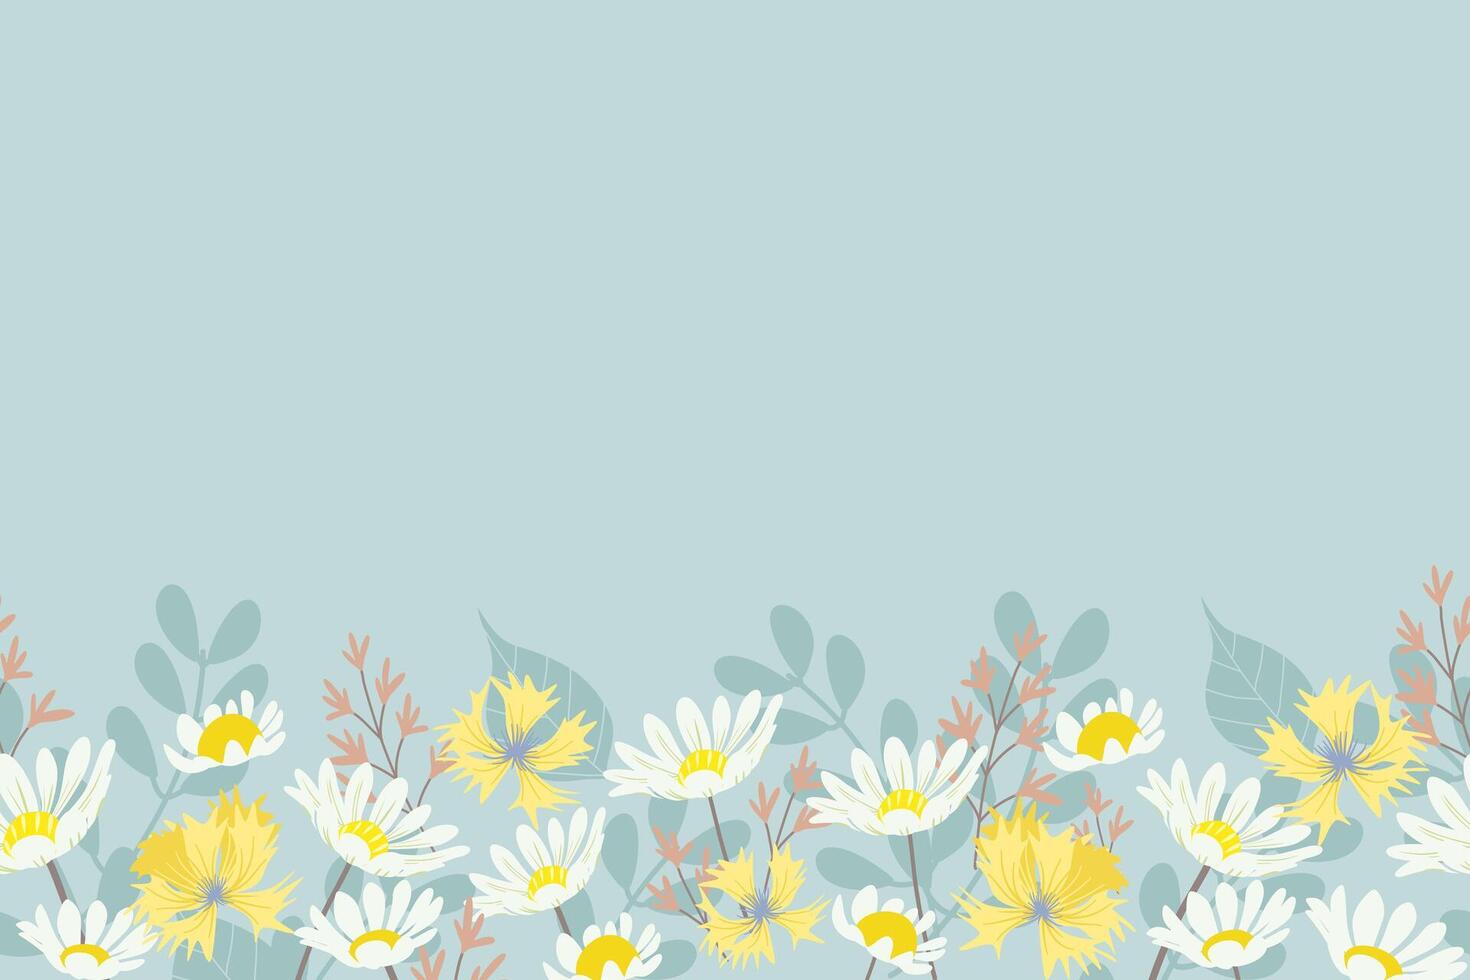 flor y hoja antecedentes frontera marco blanco margarita florecimiento de maíz prados diseño. vector ilustración. primavera verano antecedentes.